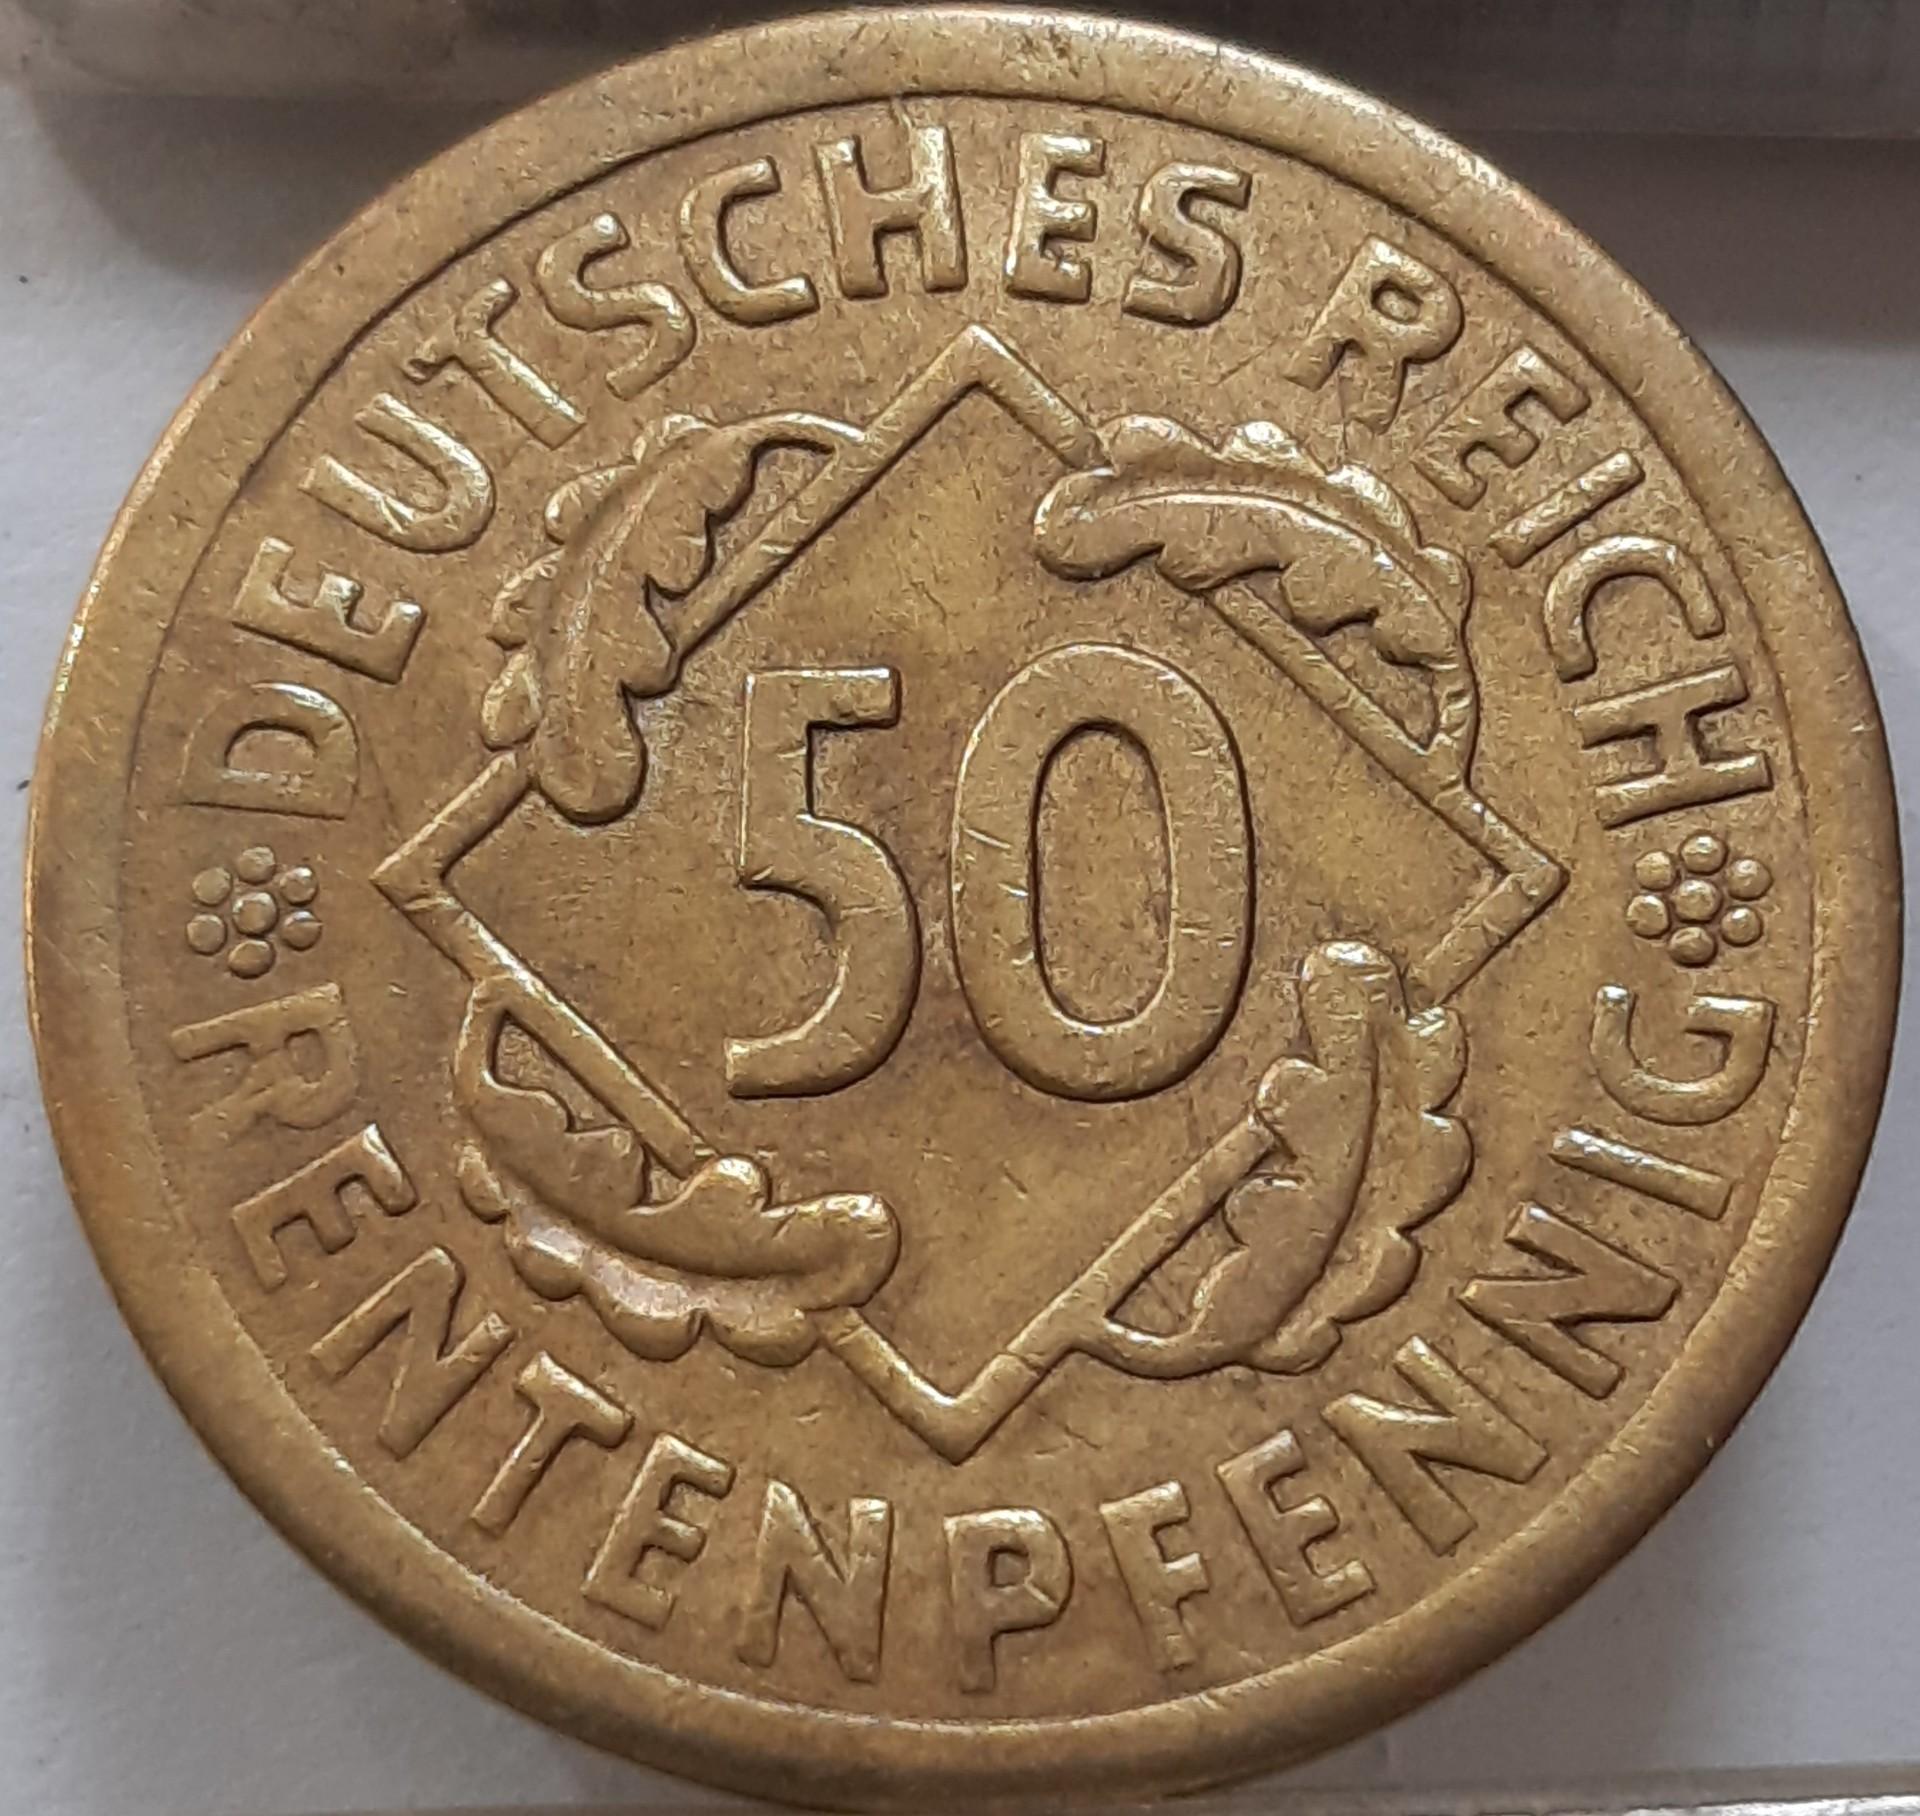 Vokietija 50 Rentenpfenigų 1924 A KM#34 (4509)